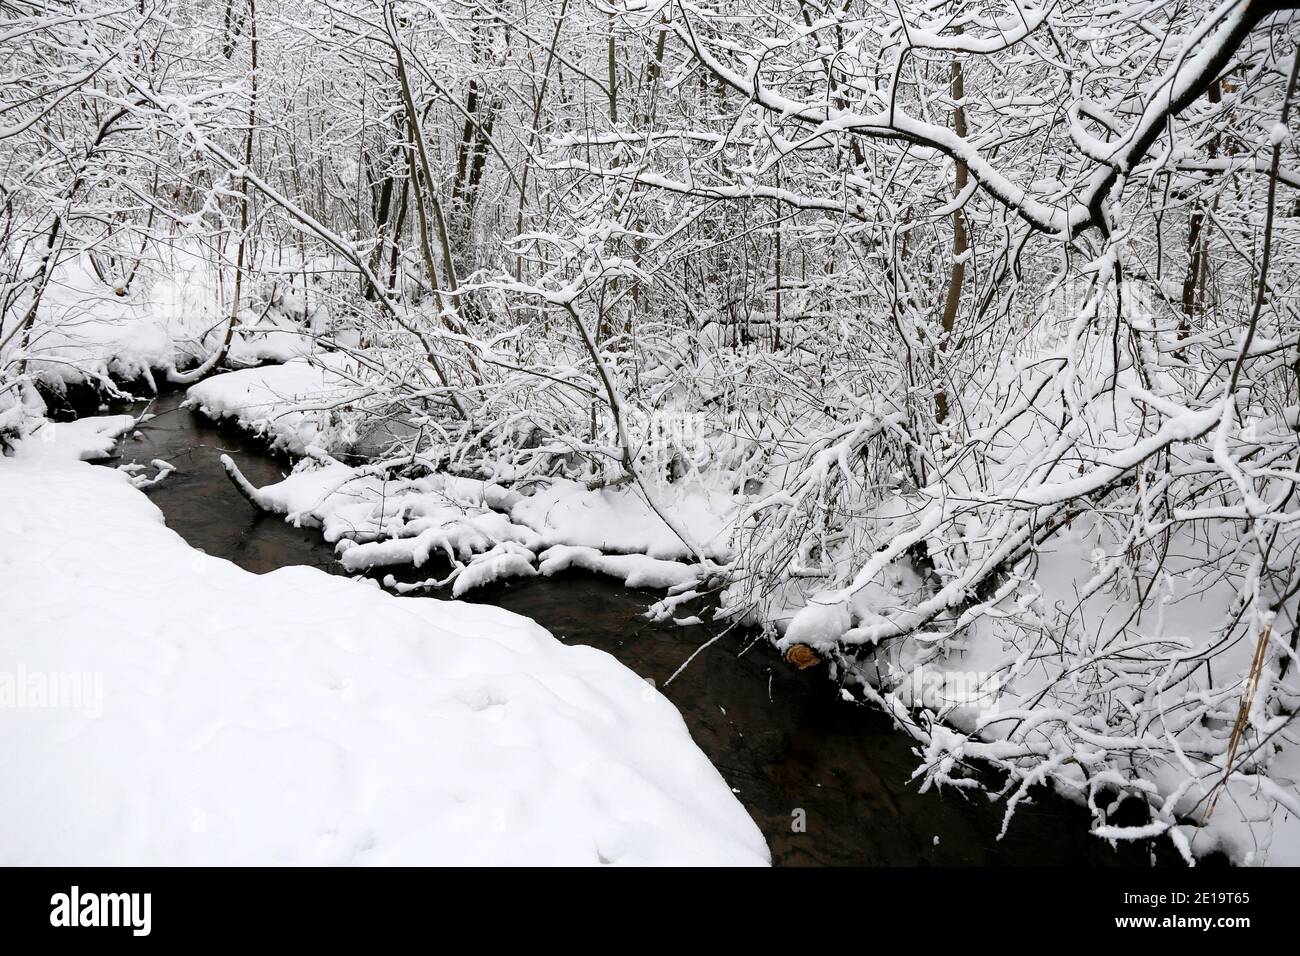 Cours d'eau dans la forêt d'hiver, arbres enneigés, vue pittoresque. La nature après les chutes de neige, temps froid Banque D'Images